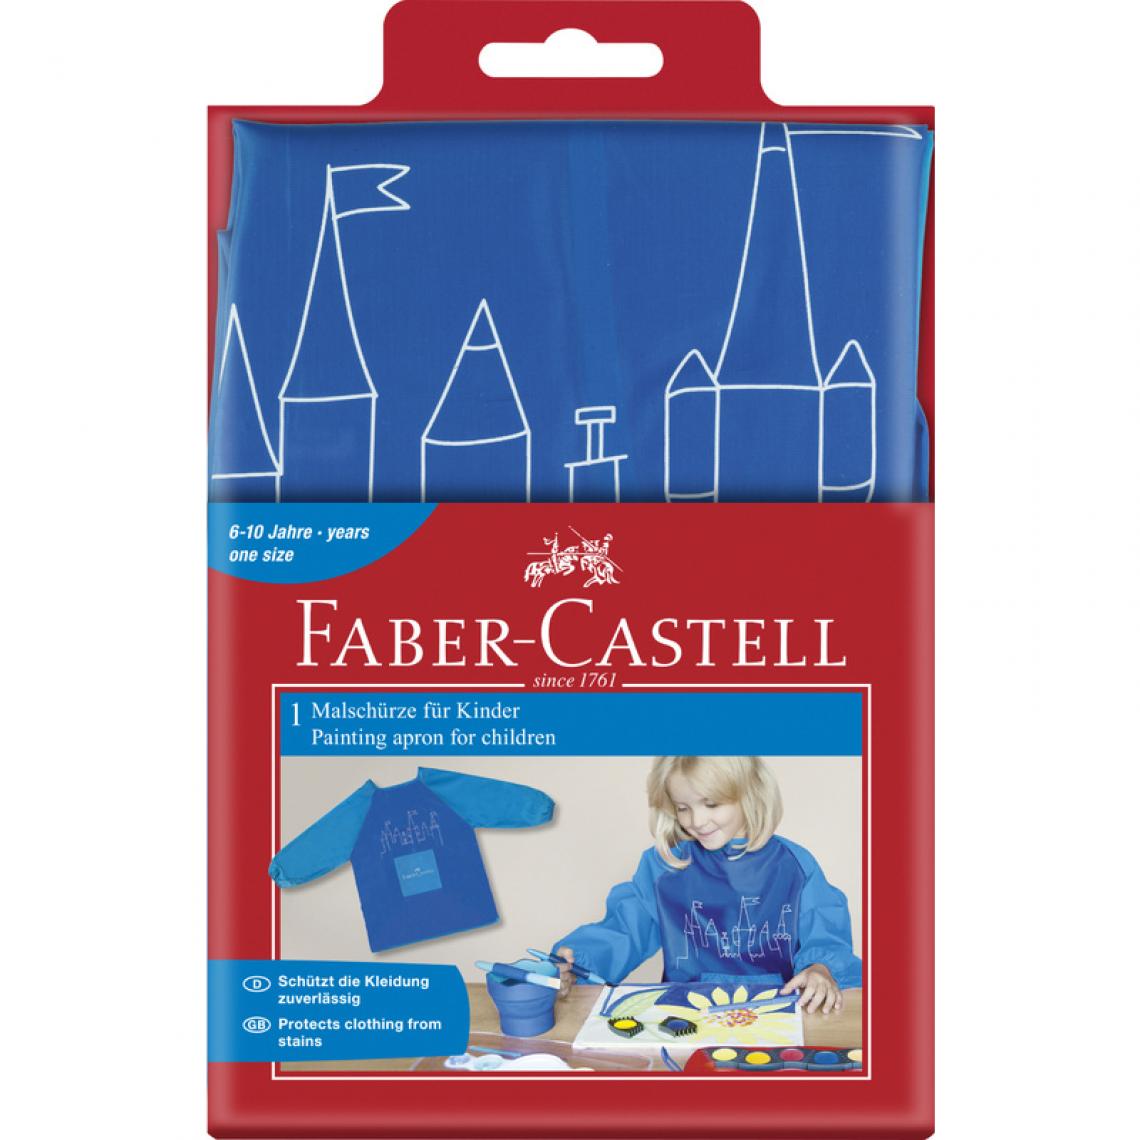 Faber-Castell - FABER-CASTELL Tablier de peinture, bleu () - Peinture à l'huile